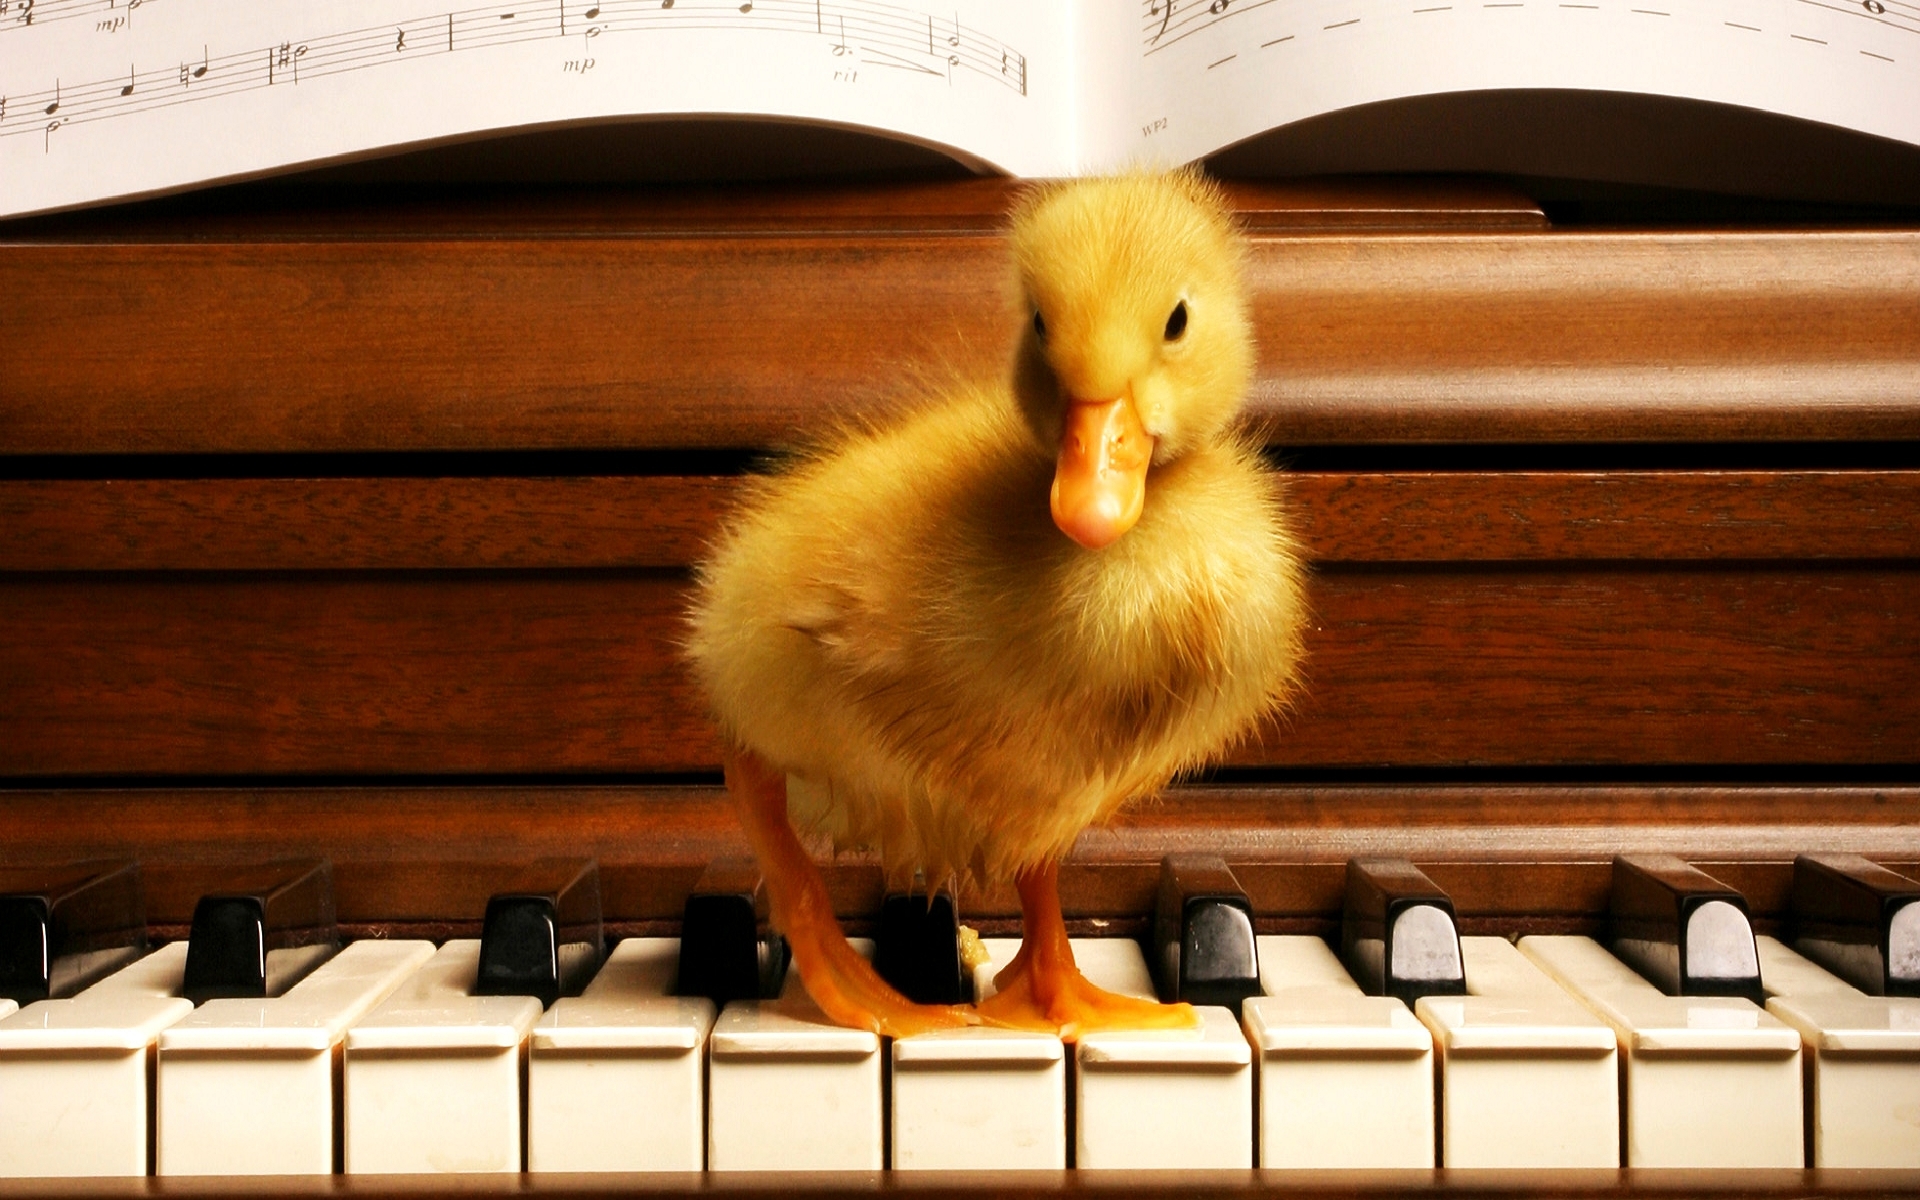 piano, music, animals, ducks, orange